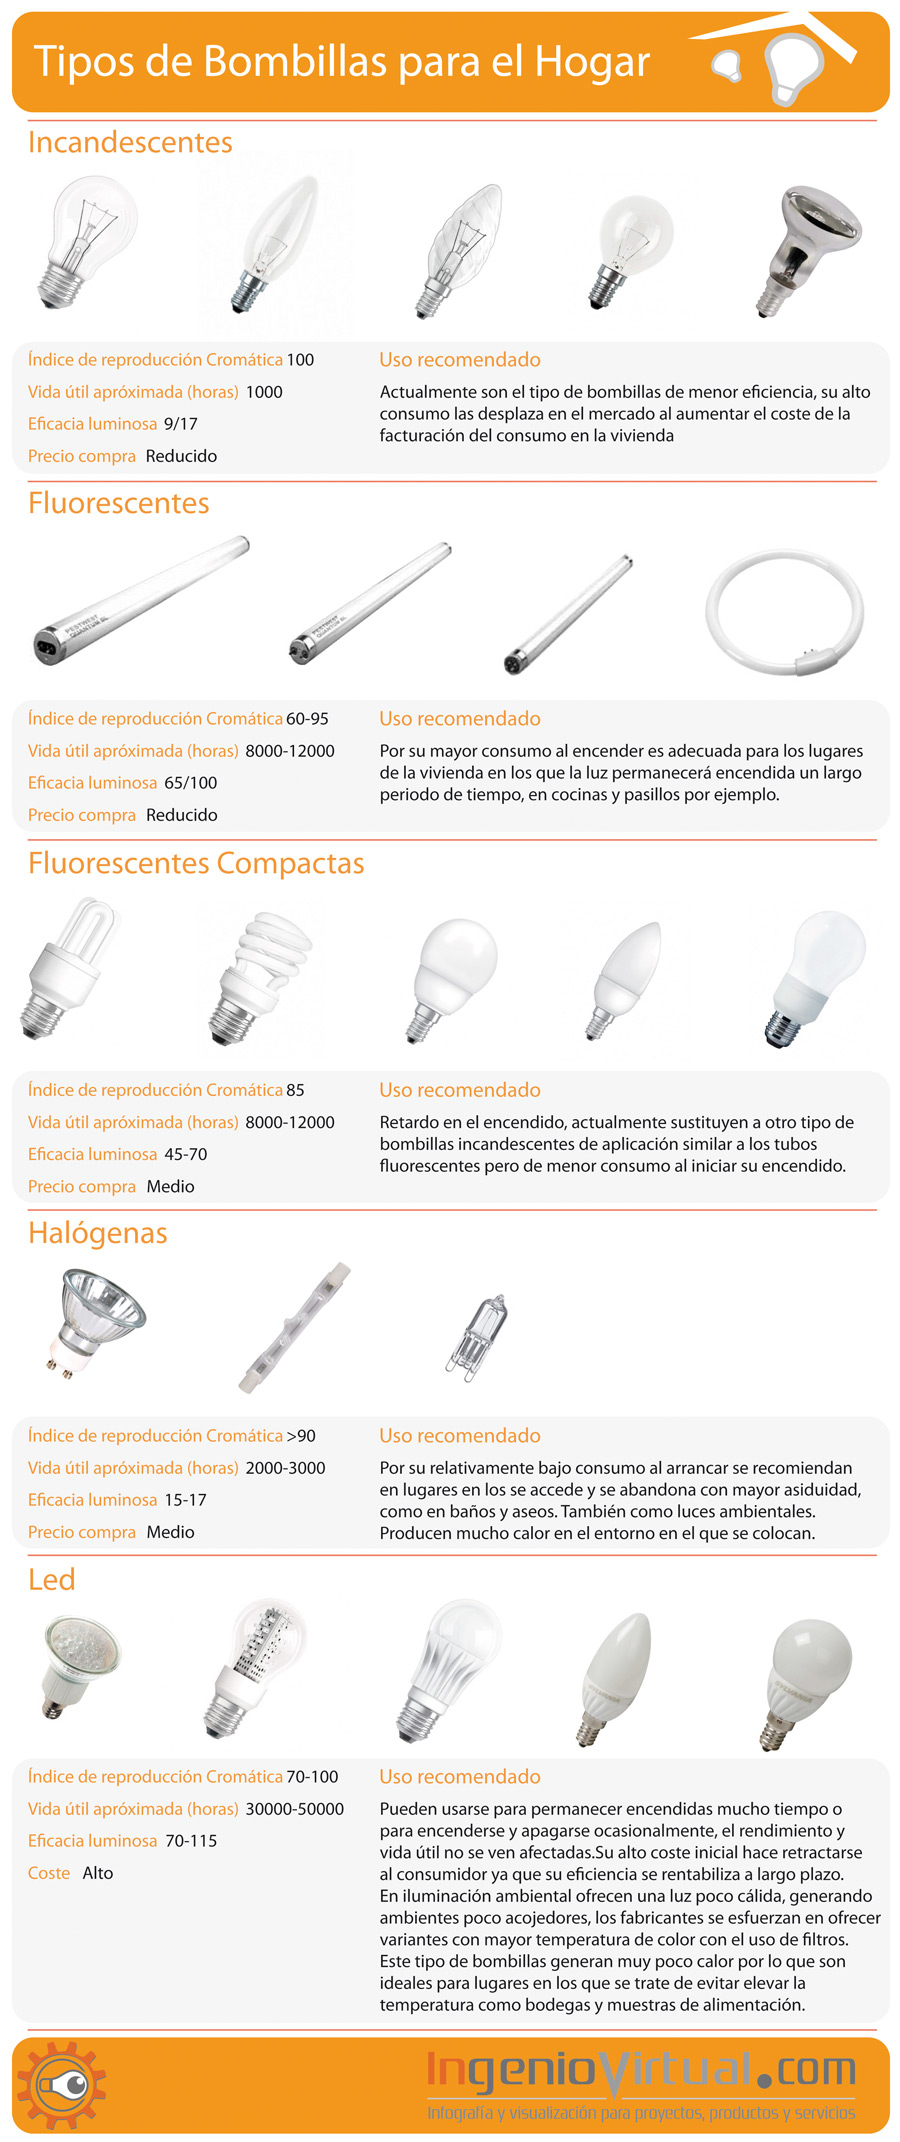 Infografía de tipos de bombillas para el hogar.